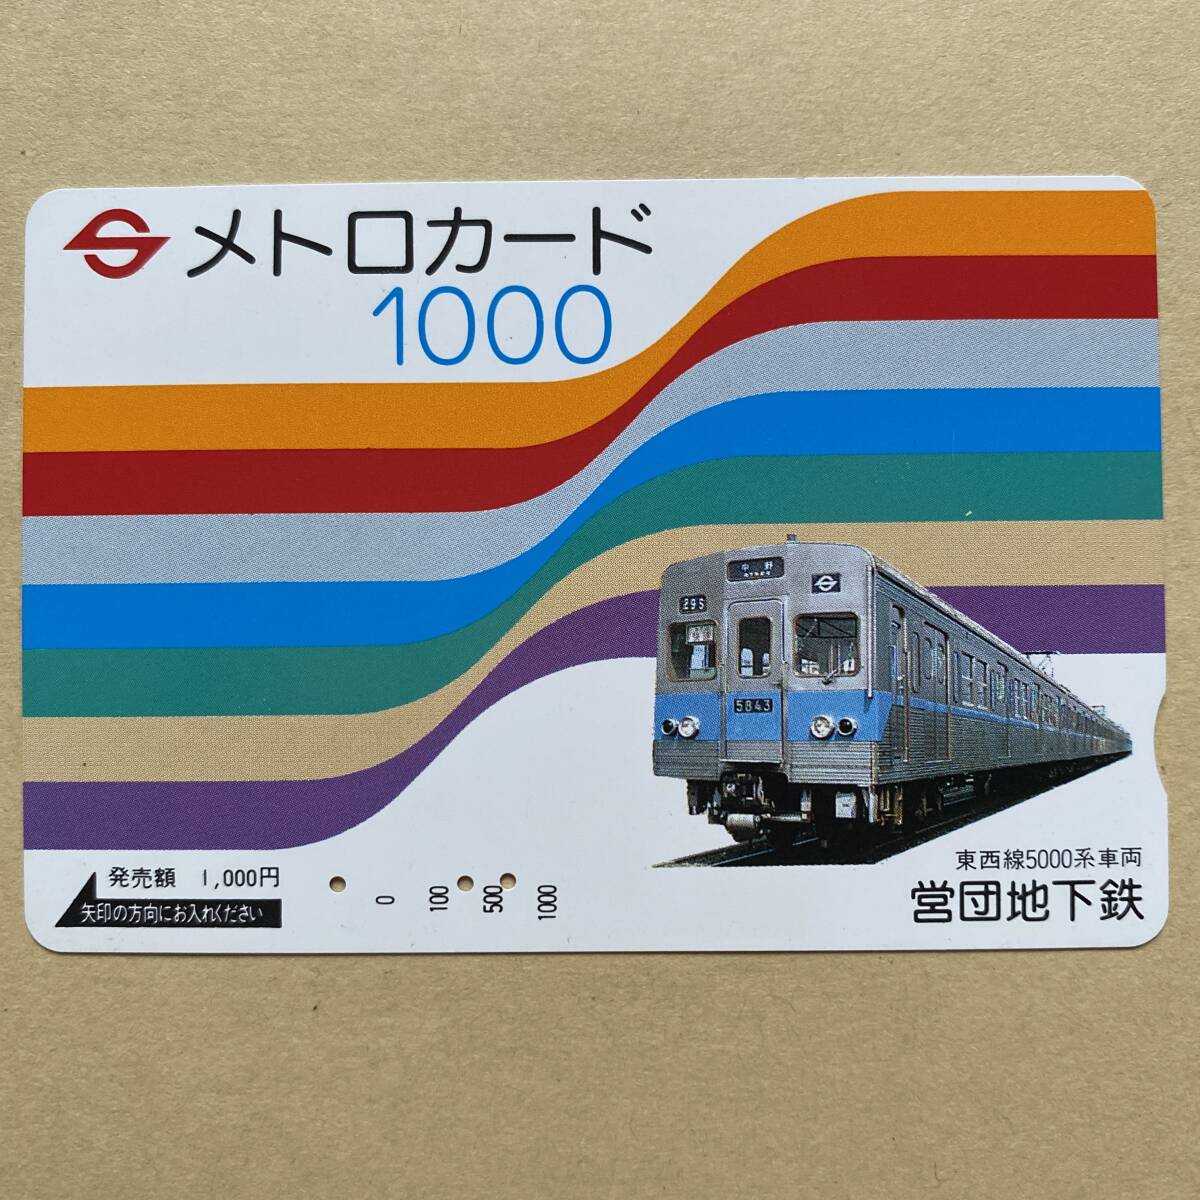 【使用済】 メトロカード 営団地下鉄 東京メトロ 東西線5000系車両_画像1